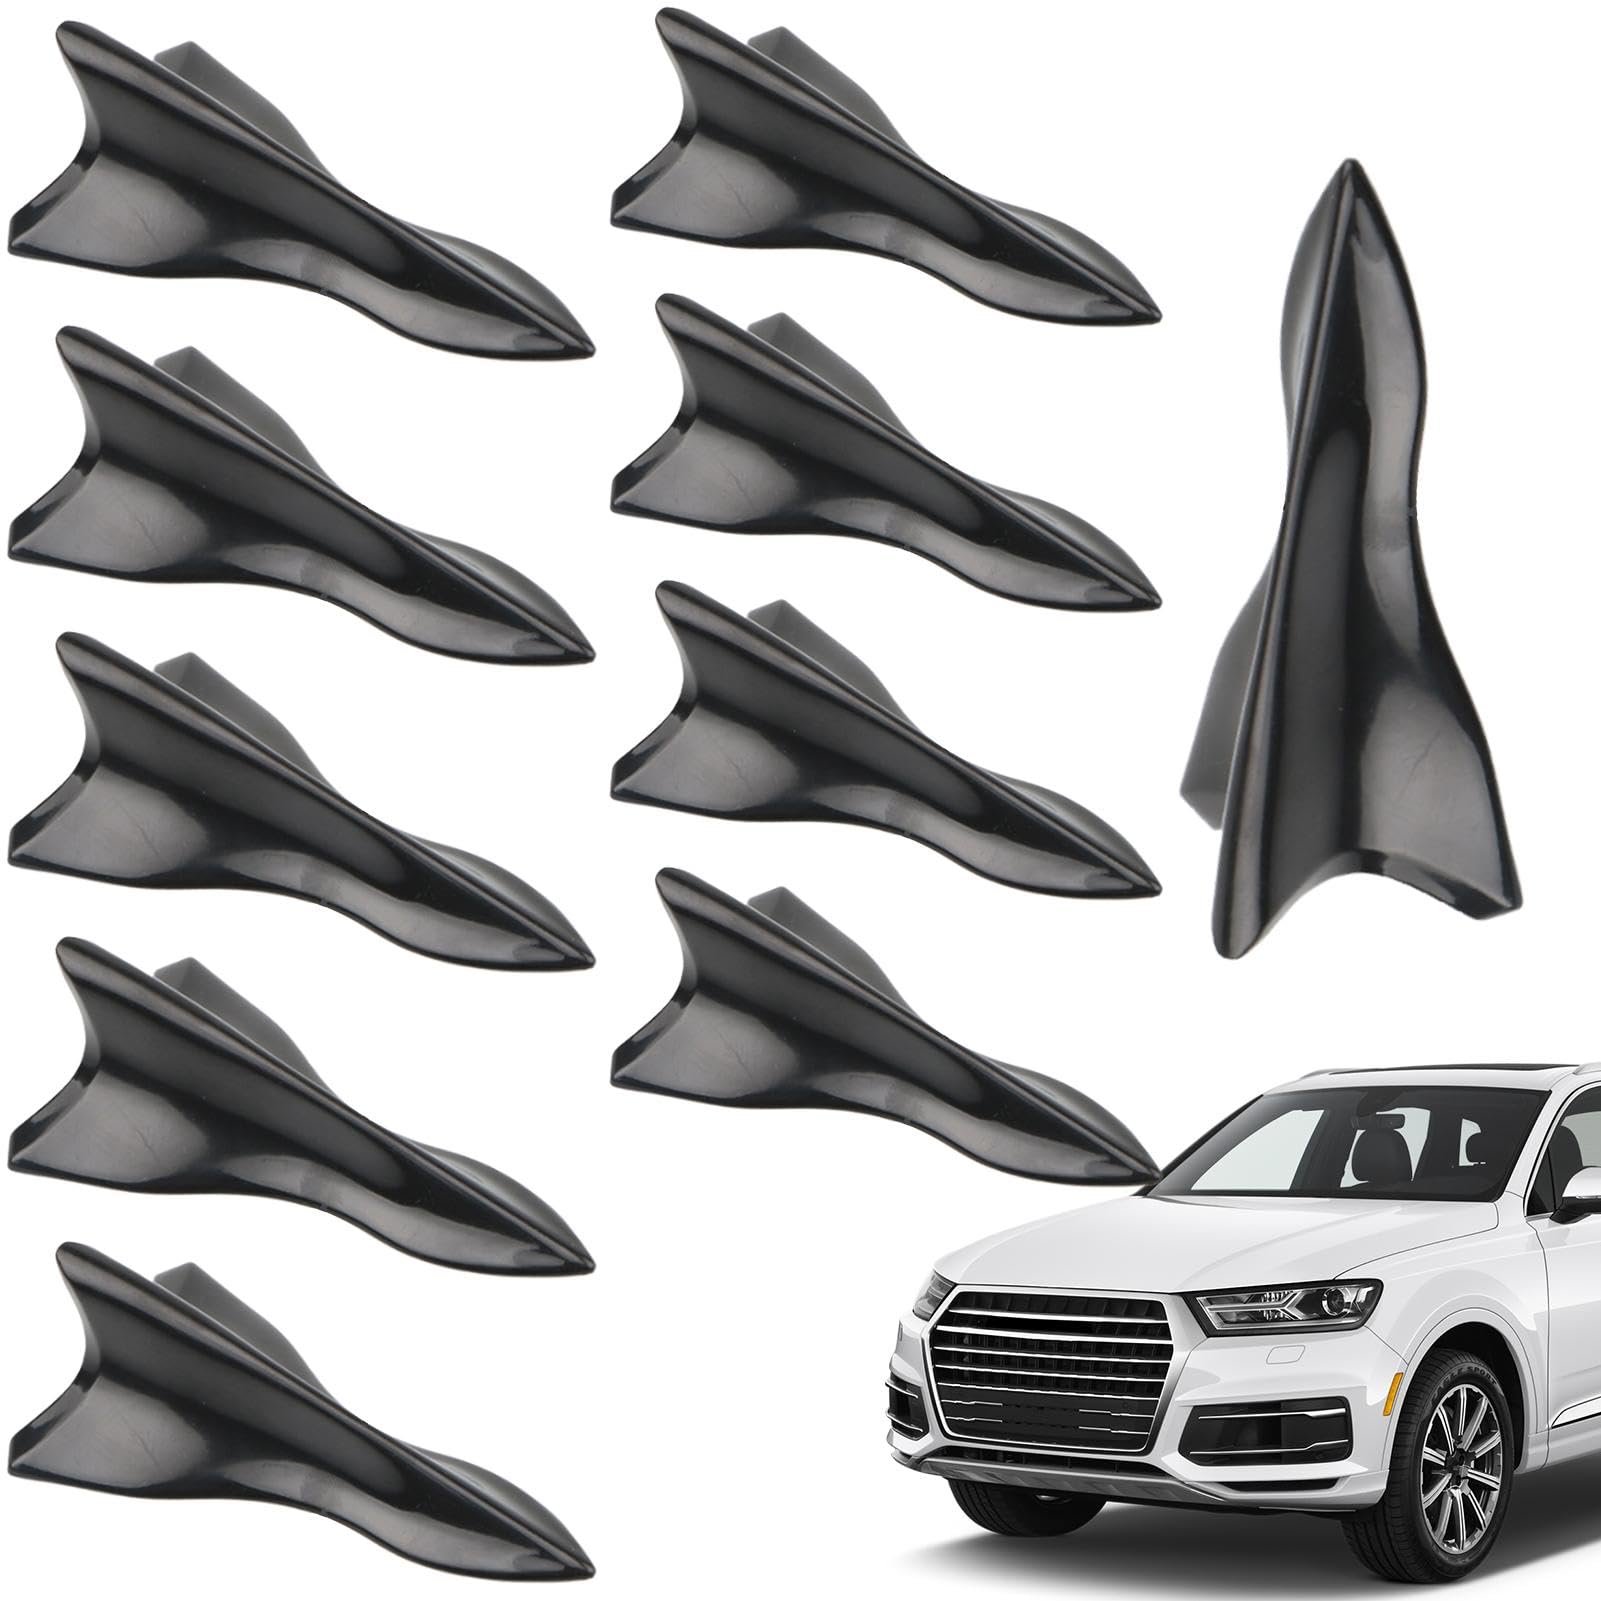 10 StüCk Auto Heck Dach Haifisch Flosse Spoiler, Diffusor-Haifischflosse, Haifischflossen-Zubehör, Haifischflossen-Spoiler, Flossen-Spoilerflügel Für SUVs, Autos, LKWs von Setauoo